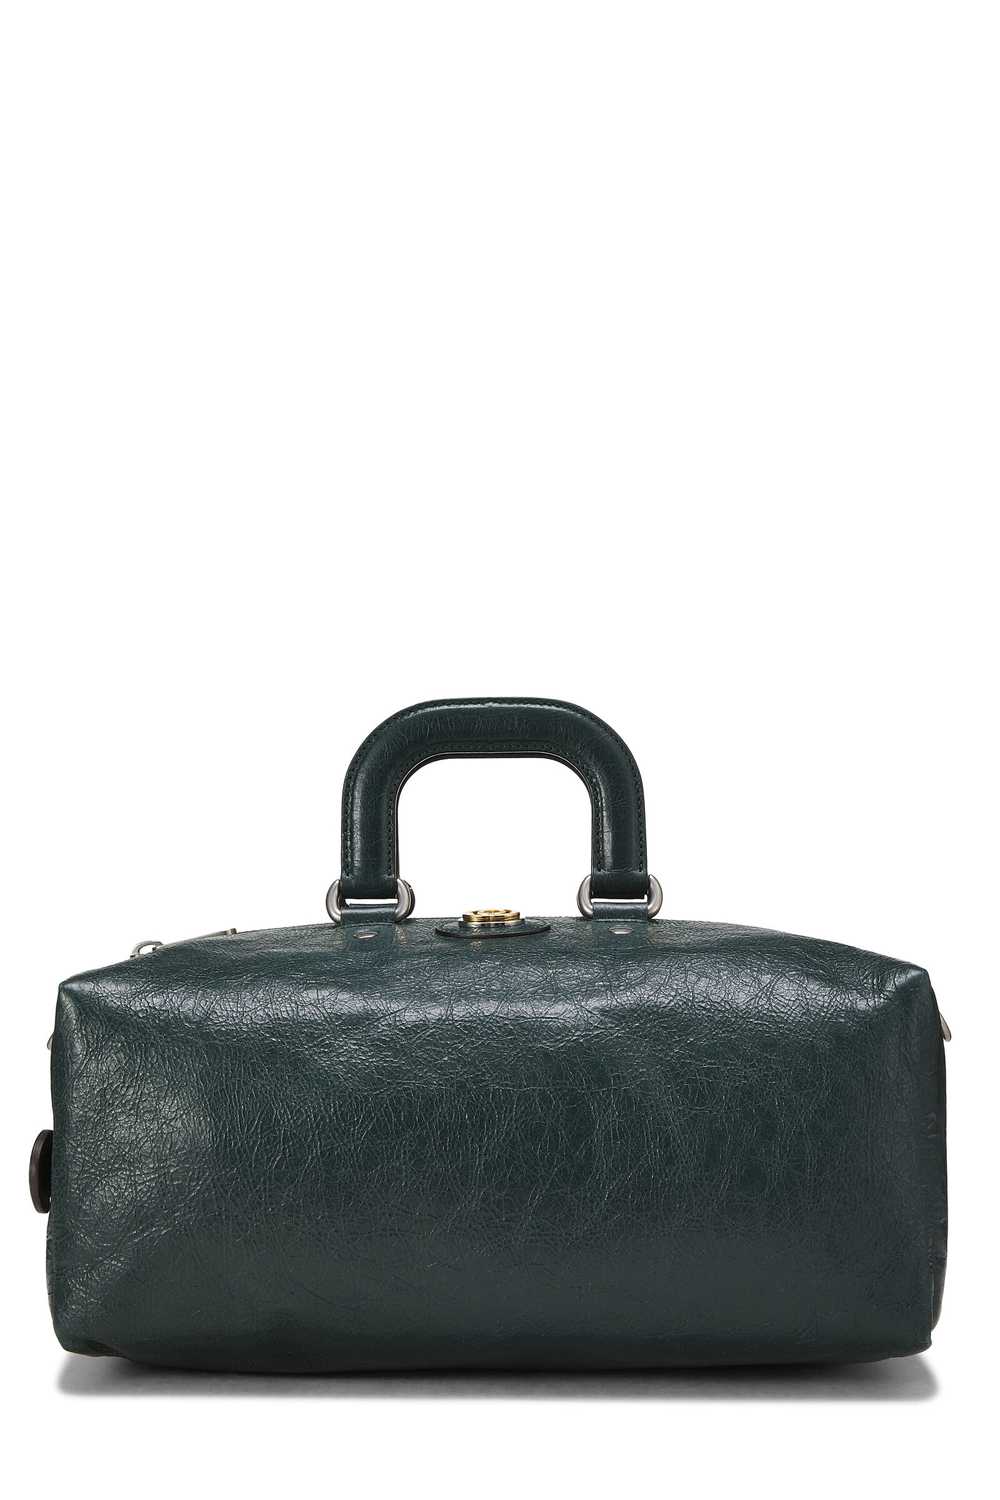 Black Leather Soft Backpack - image 5